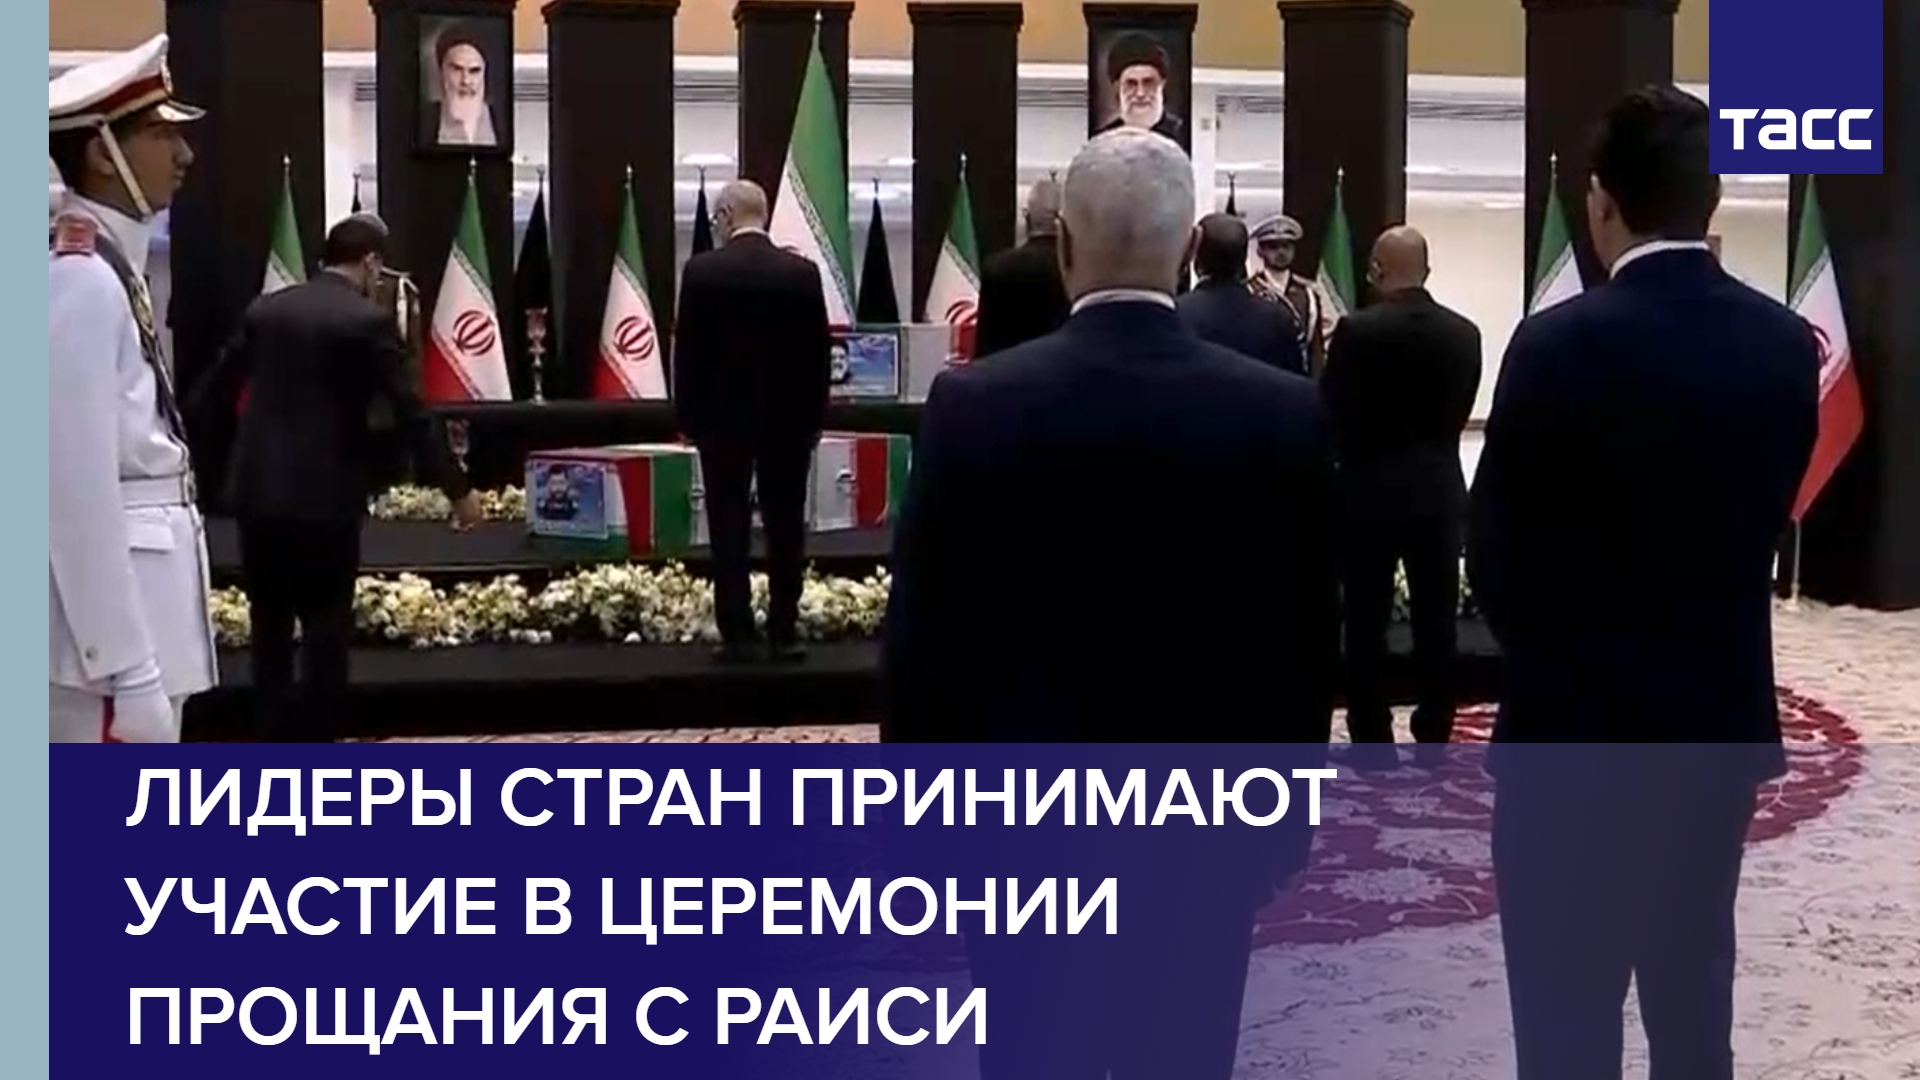 Лидеры стран принимают участие в церемонии прощания с Раиси